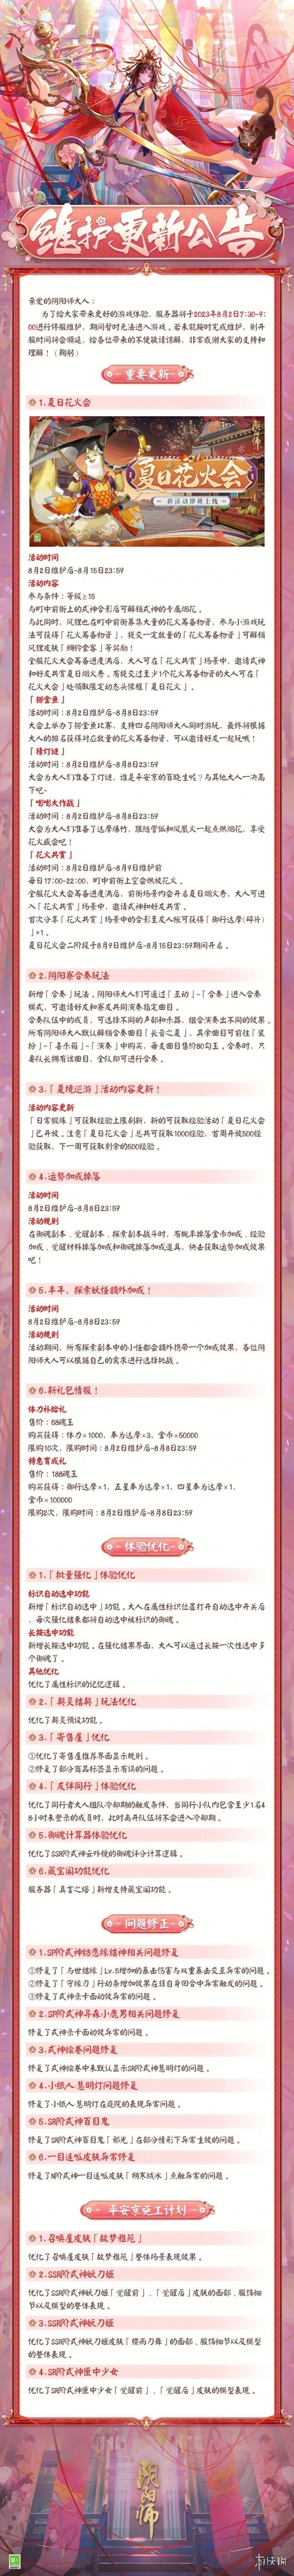 阴阳师8月2日更新公告夏日花火会活动开启